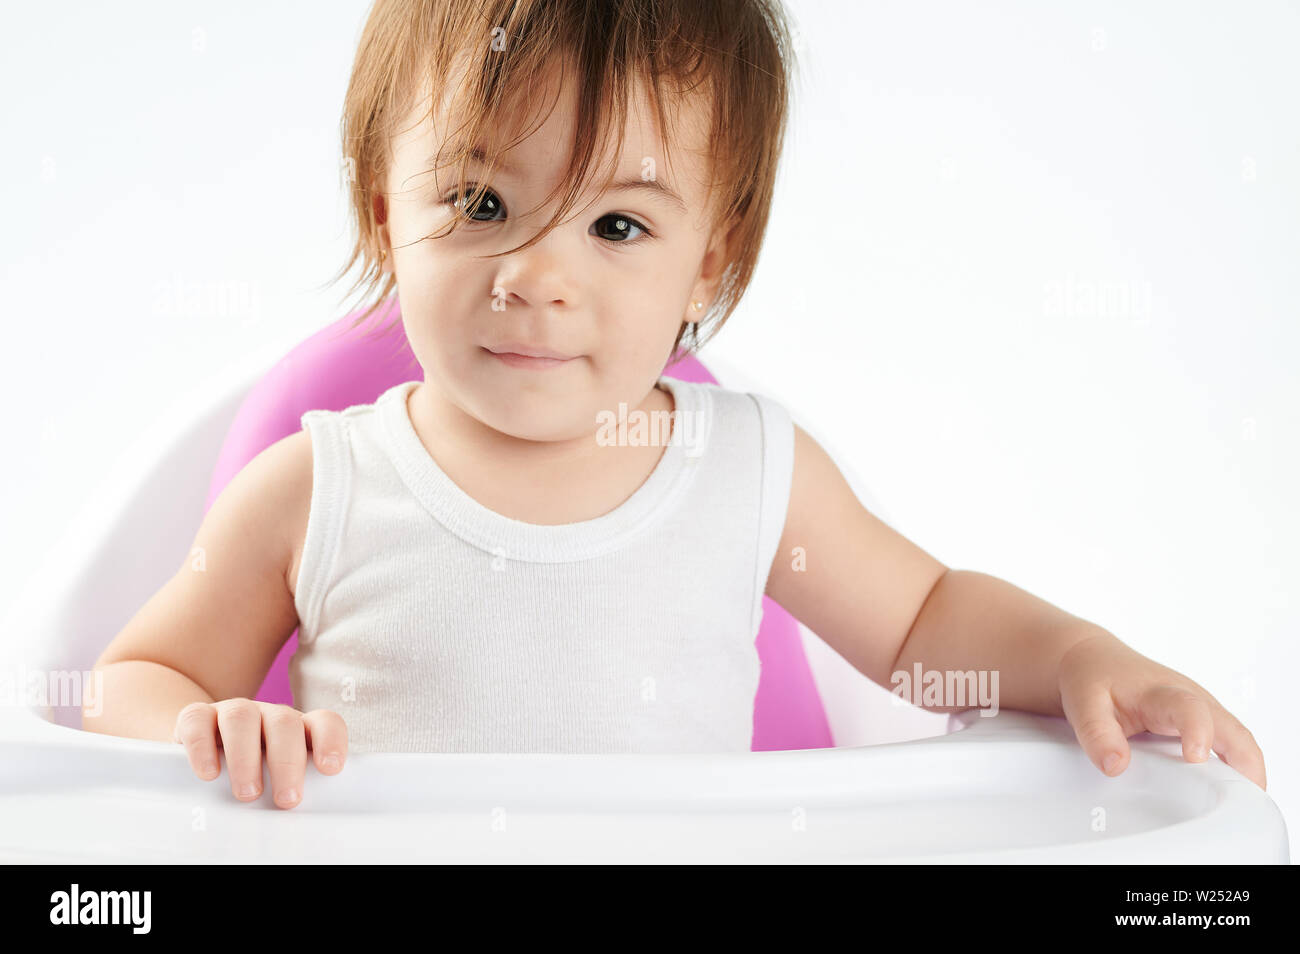 Ziemlich kaukasische Baby girl portrait Siiting auf Hoher Stuhl isoliert Stockfoto